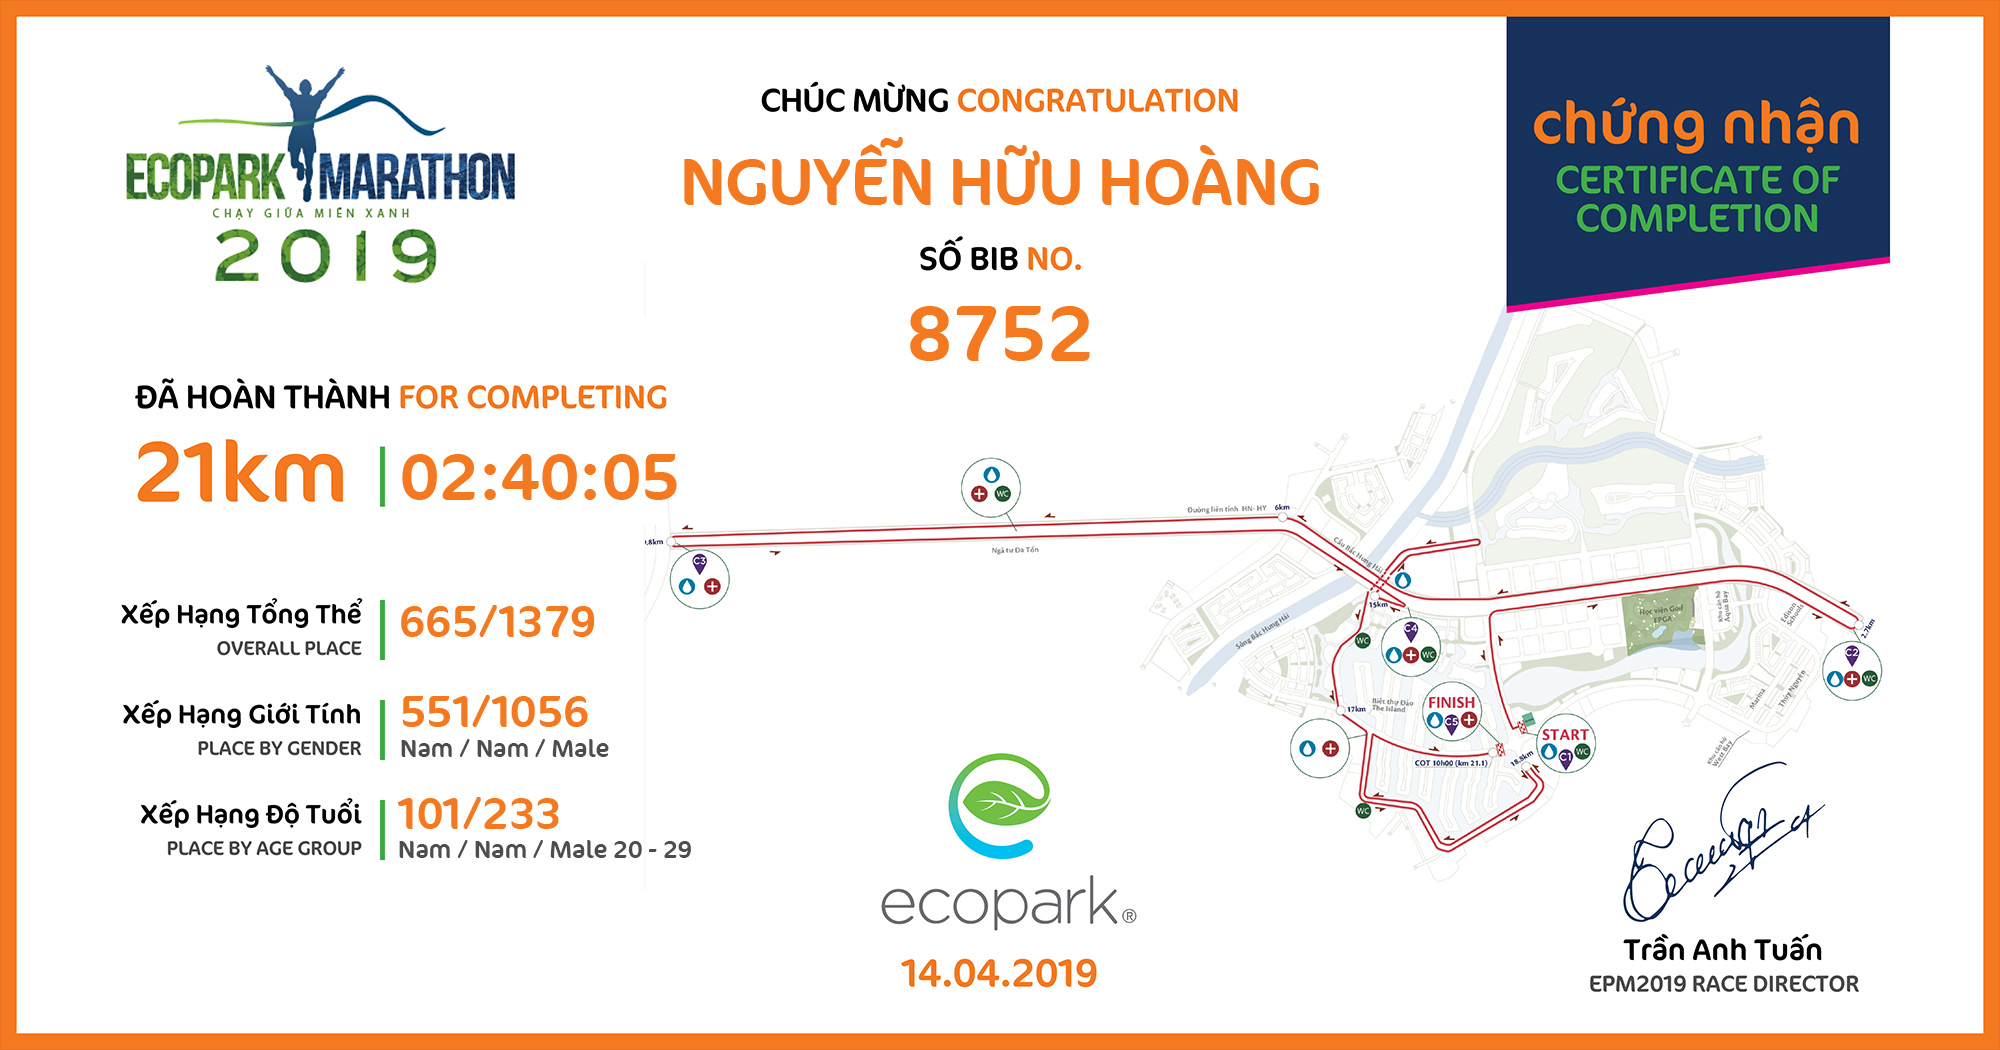 8752 - Nguyễn Hữu Hoàng